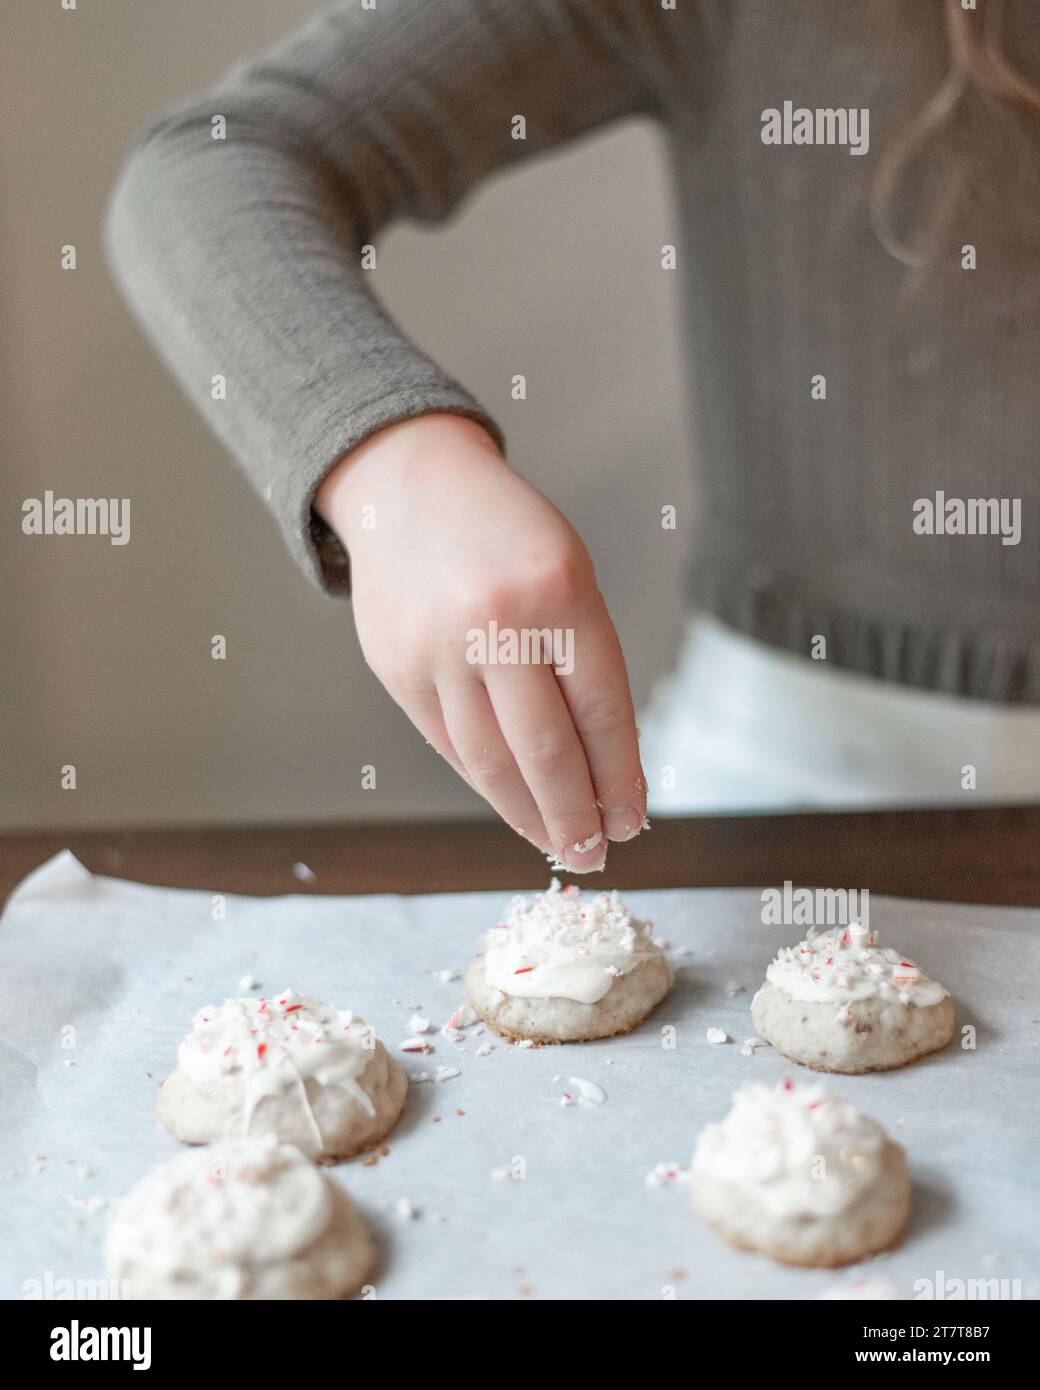 Fille saupoudrant de la canne à sucre sur des biscuits Banque D'Images